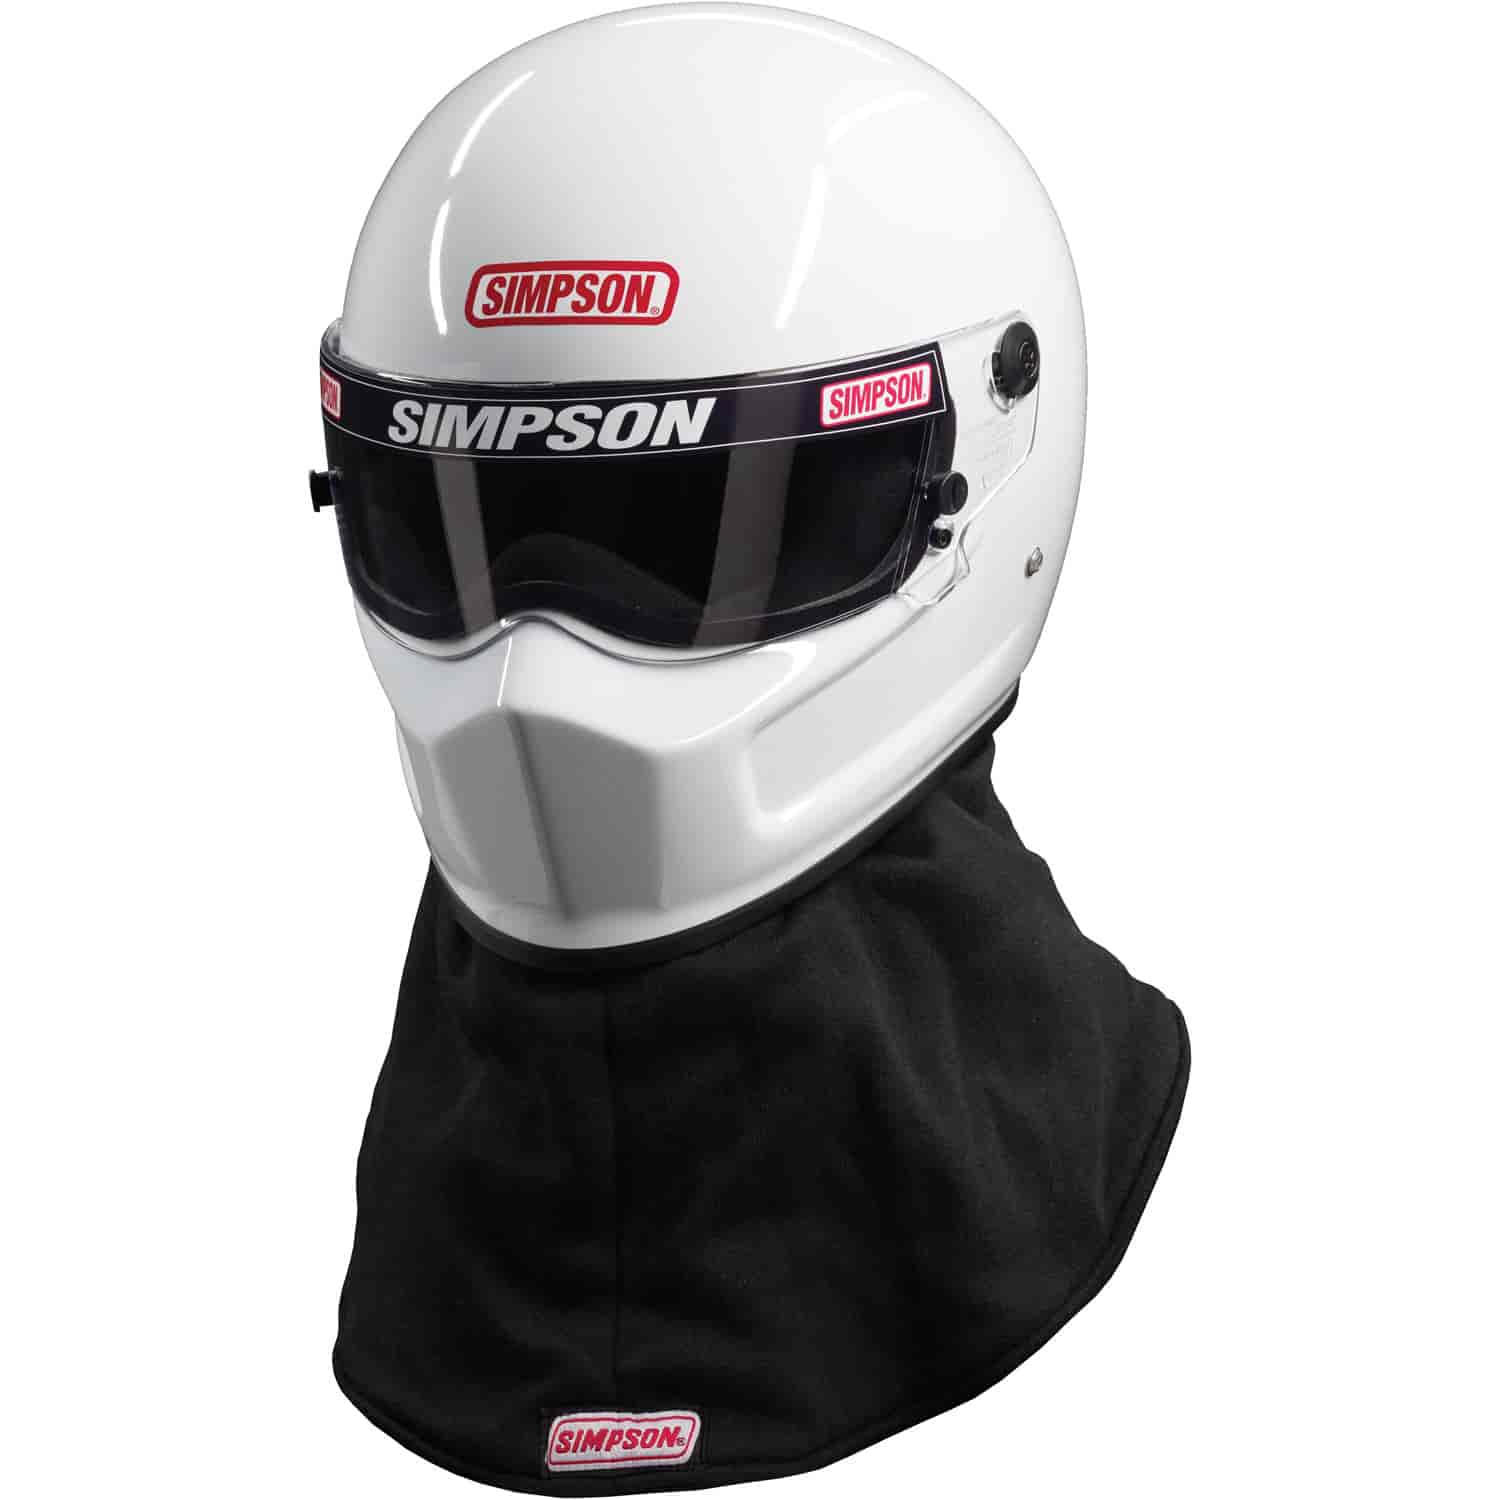 Drag Bandit Helmet SA2015 Certified